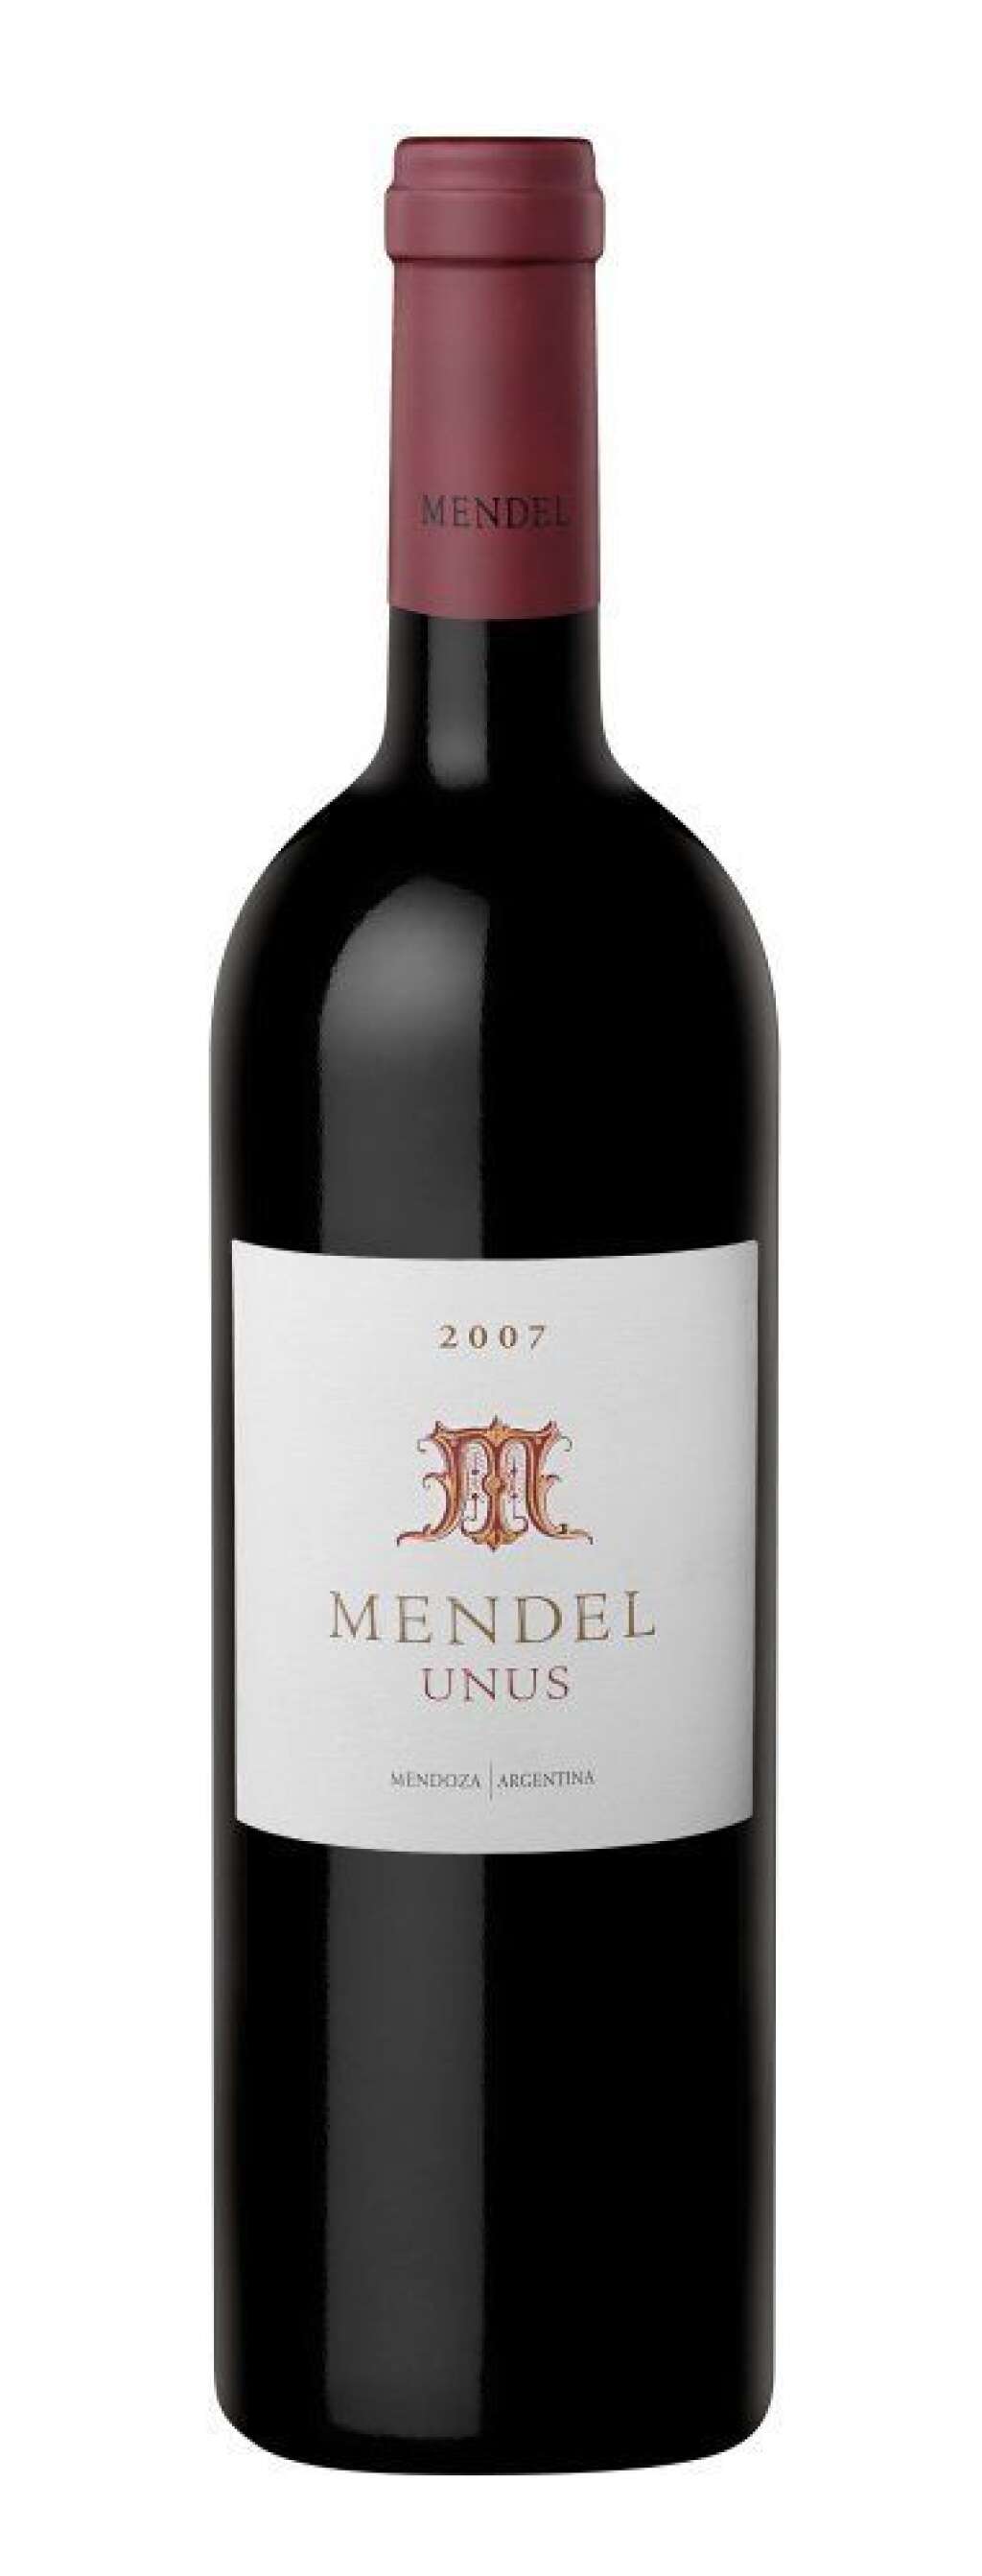 Mendel Unus - La <a href="http://www.mendel.com.ar" target="_hplink">bodega Mendel</a> (Mendoza) est bien connue en Argentine. Les vins sont vinifiés par un des oenologues les plus connus : Roberto de la Mota. Le Mendel Unus est un mélange de malbec (70 %) et de cabernet sauvignon (30 %). C'est fabuleux. Le vin oscille entre un côté très floral (violette) et fruité (cassis) du malbec et la finale délicieusement chocolatée. Pour peu, on ne sentirait même pas les 14,5 % vol. alc.